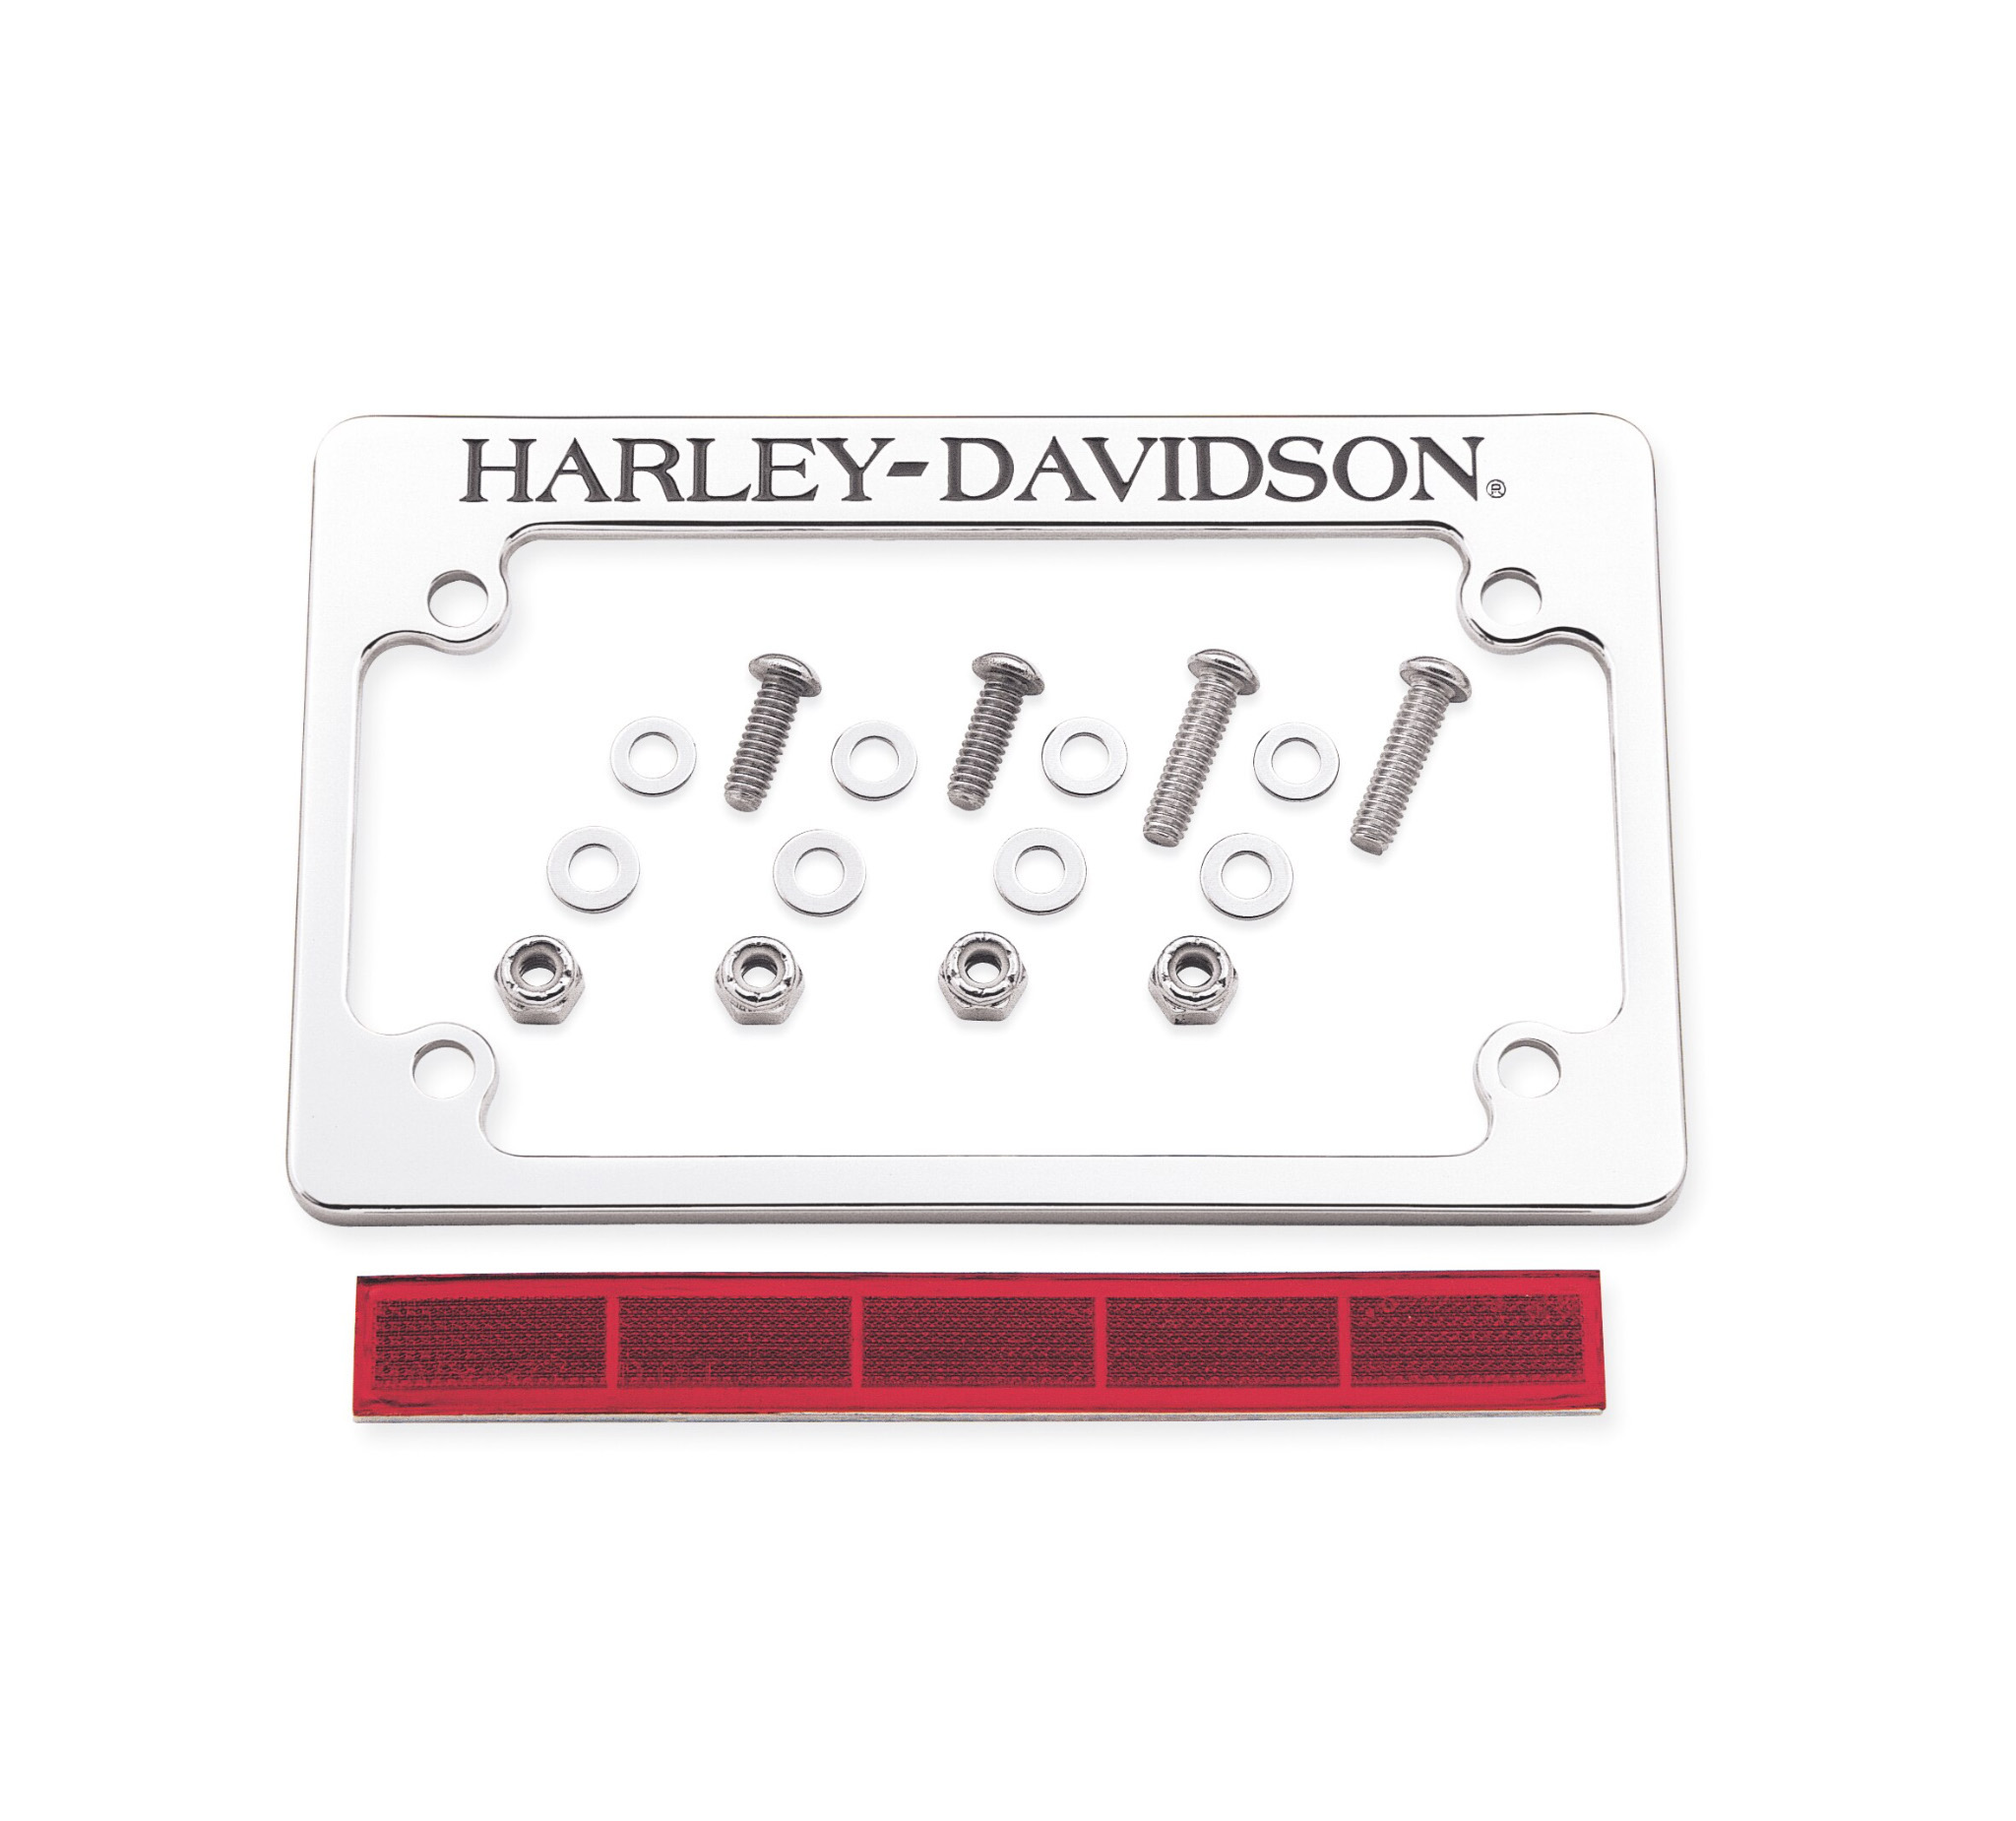 H D License Plate Frame 60051 01 Harley Davidson Europe